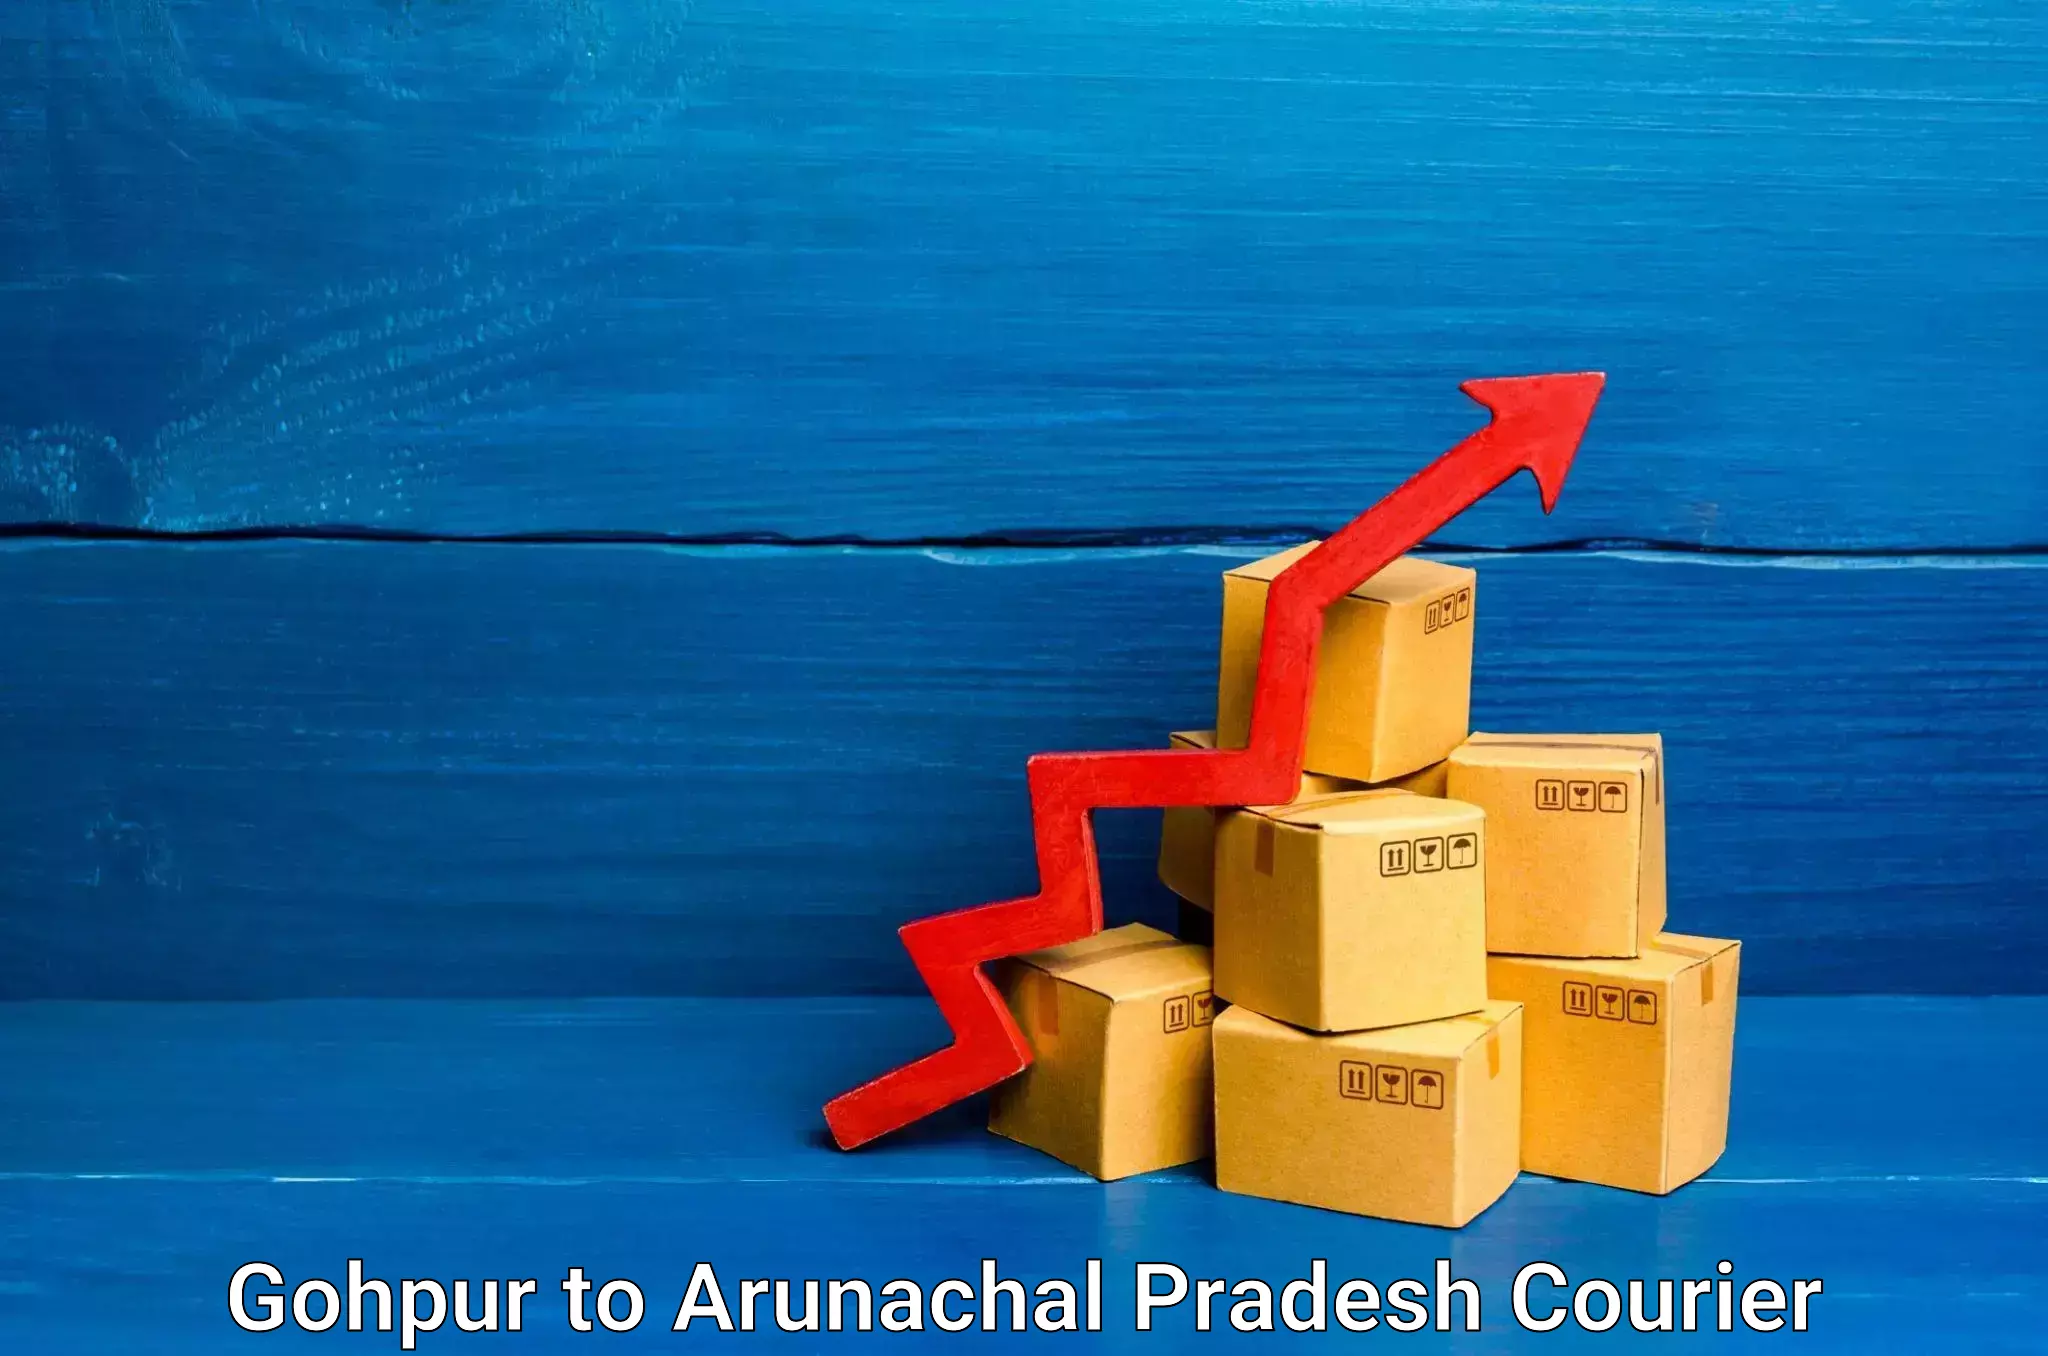 Efficient courier operations Gohpur to Arunachal Pradesh